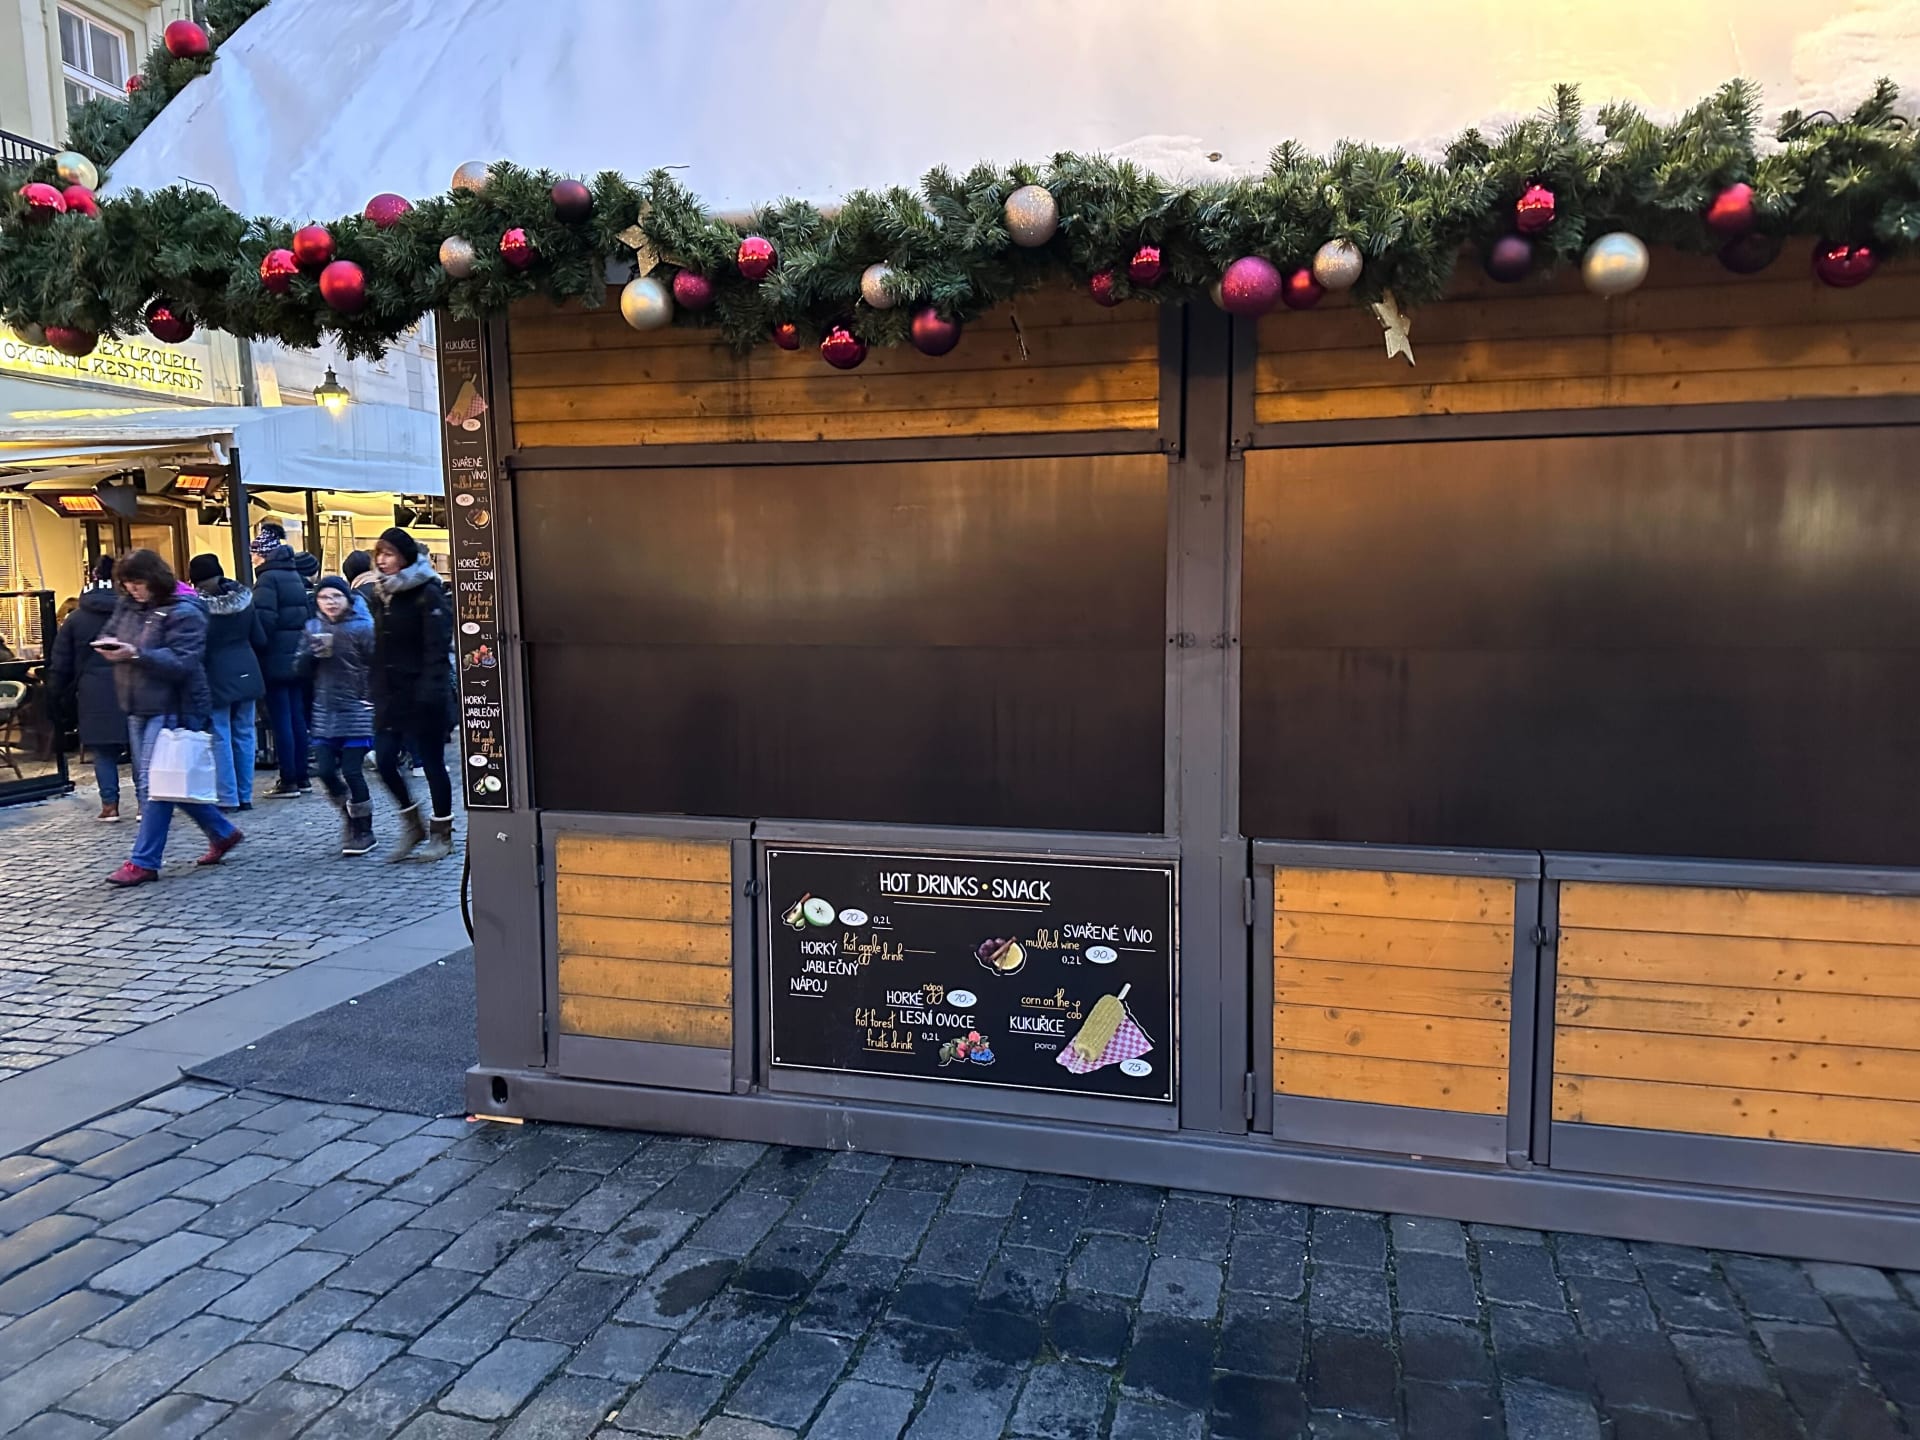 Příprava vánočních trhů na Staroměstském náměstí